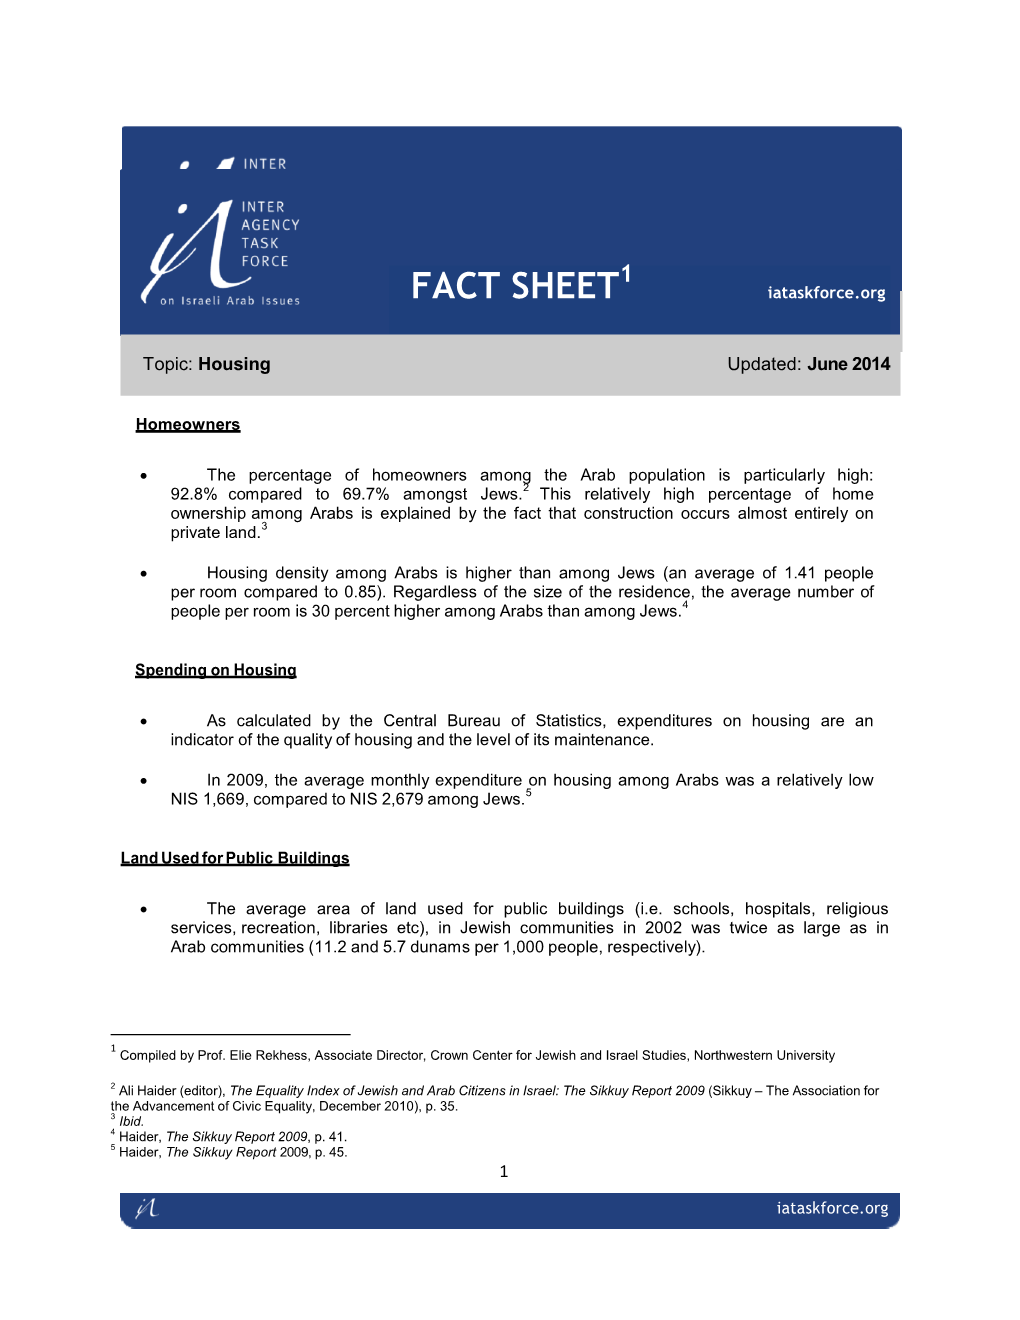 IATF Fact Sheet